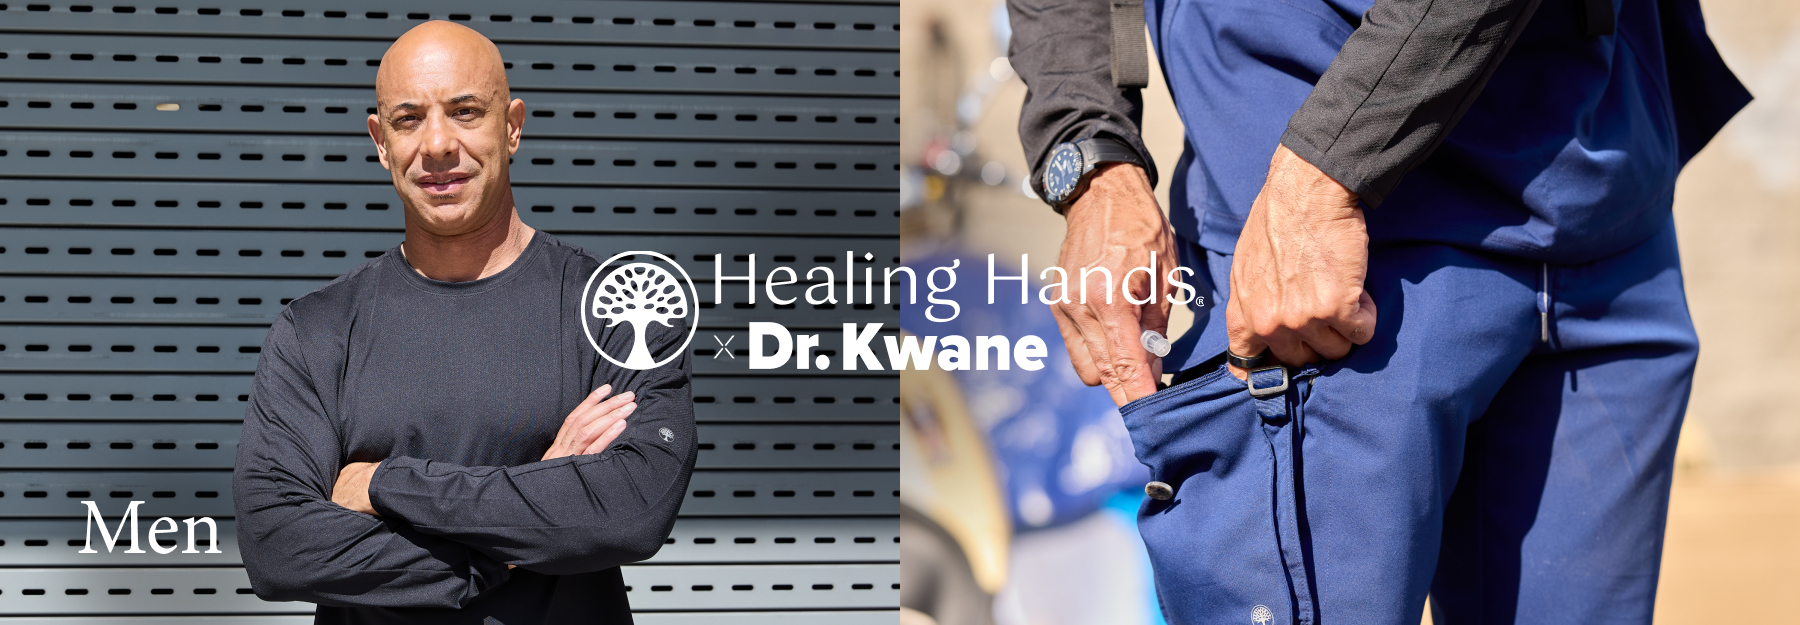 dr. kwane x healing hands men's scrubs.